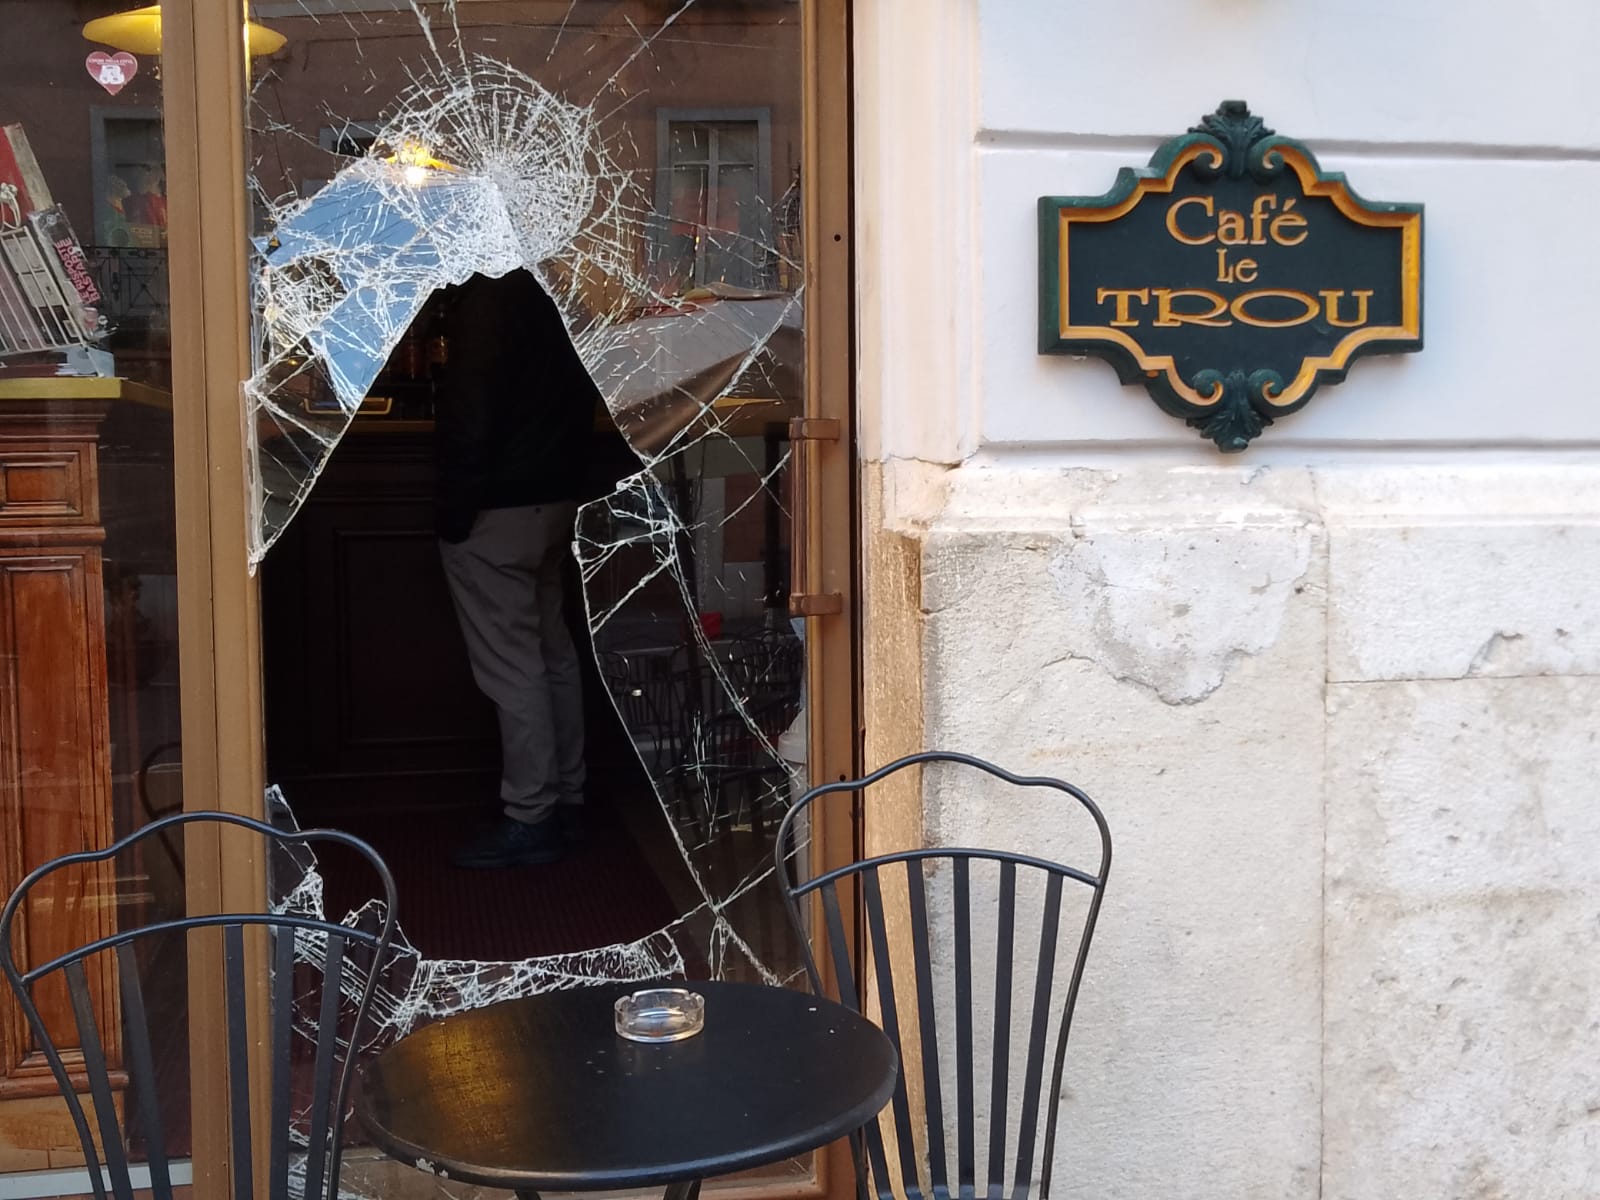 Furto con scasso in un bar del centro storico di Benevento, rubato contante